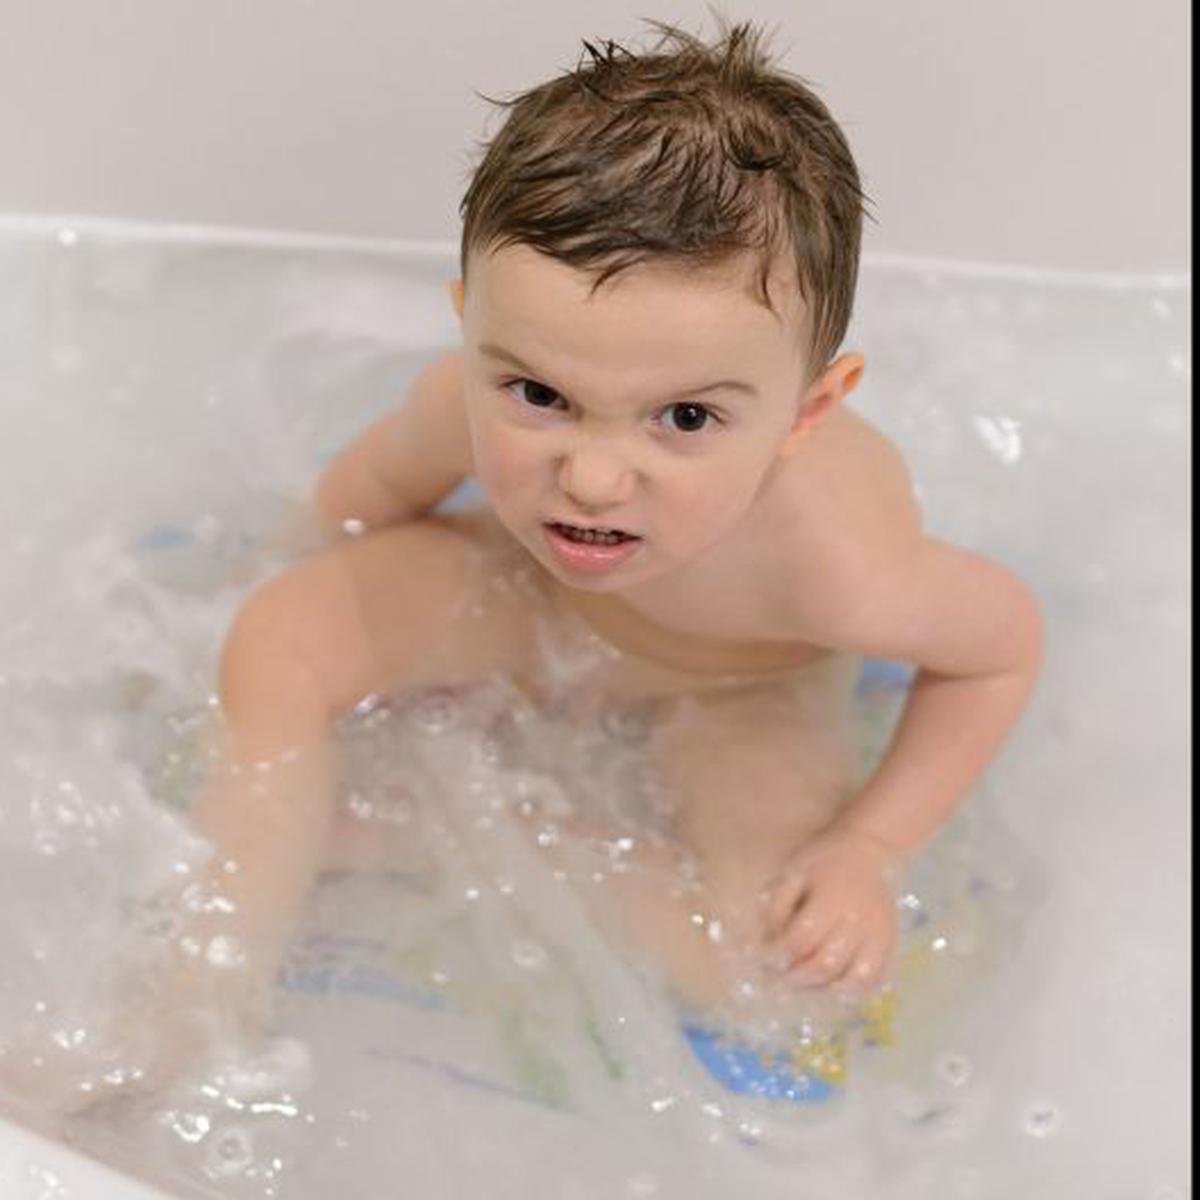 A tu hijo no le gusta bañarse? Anímalo de esta manera | FAMILIA 